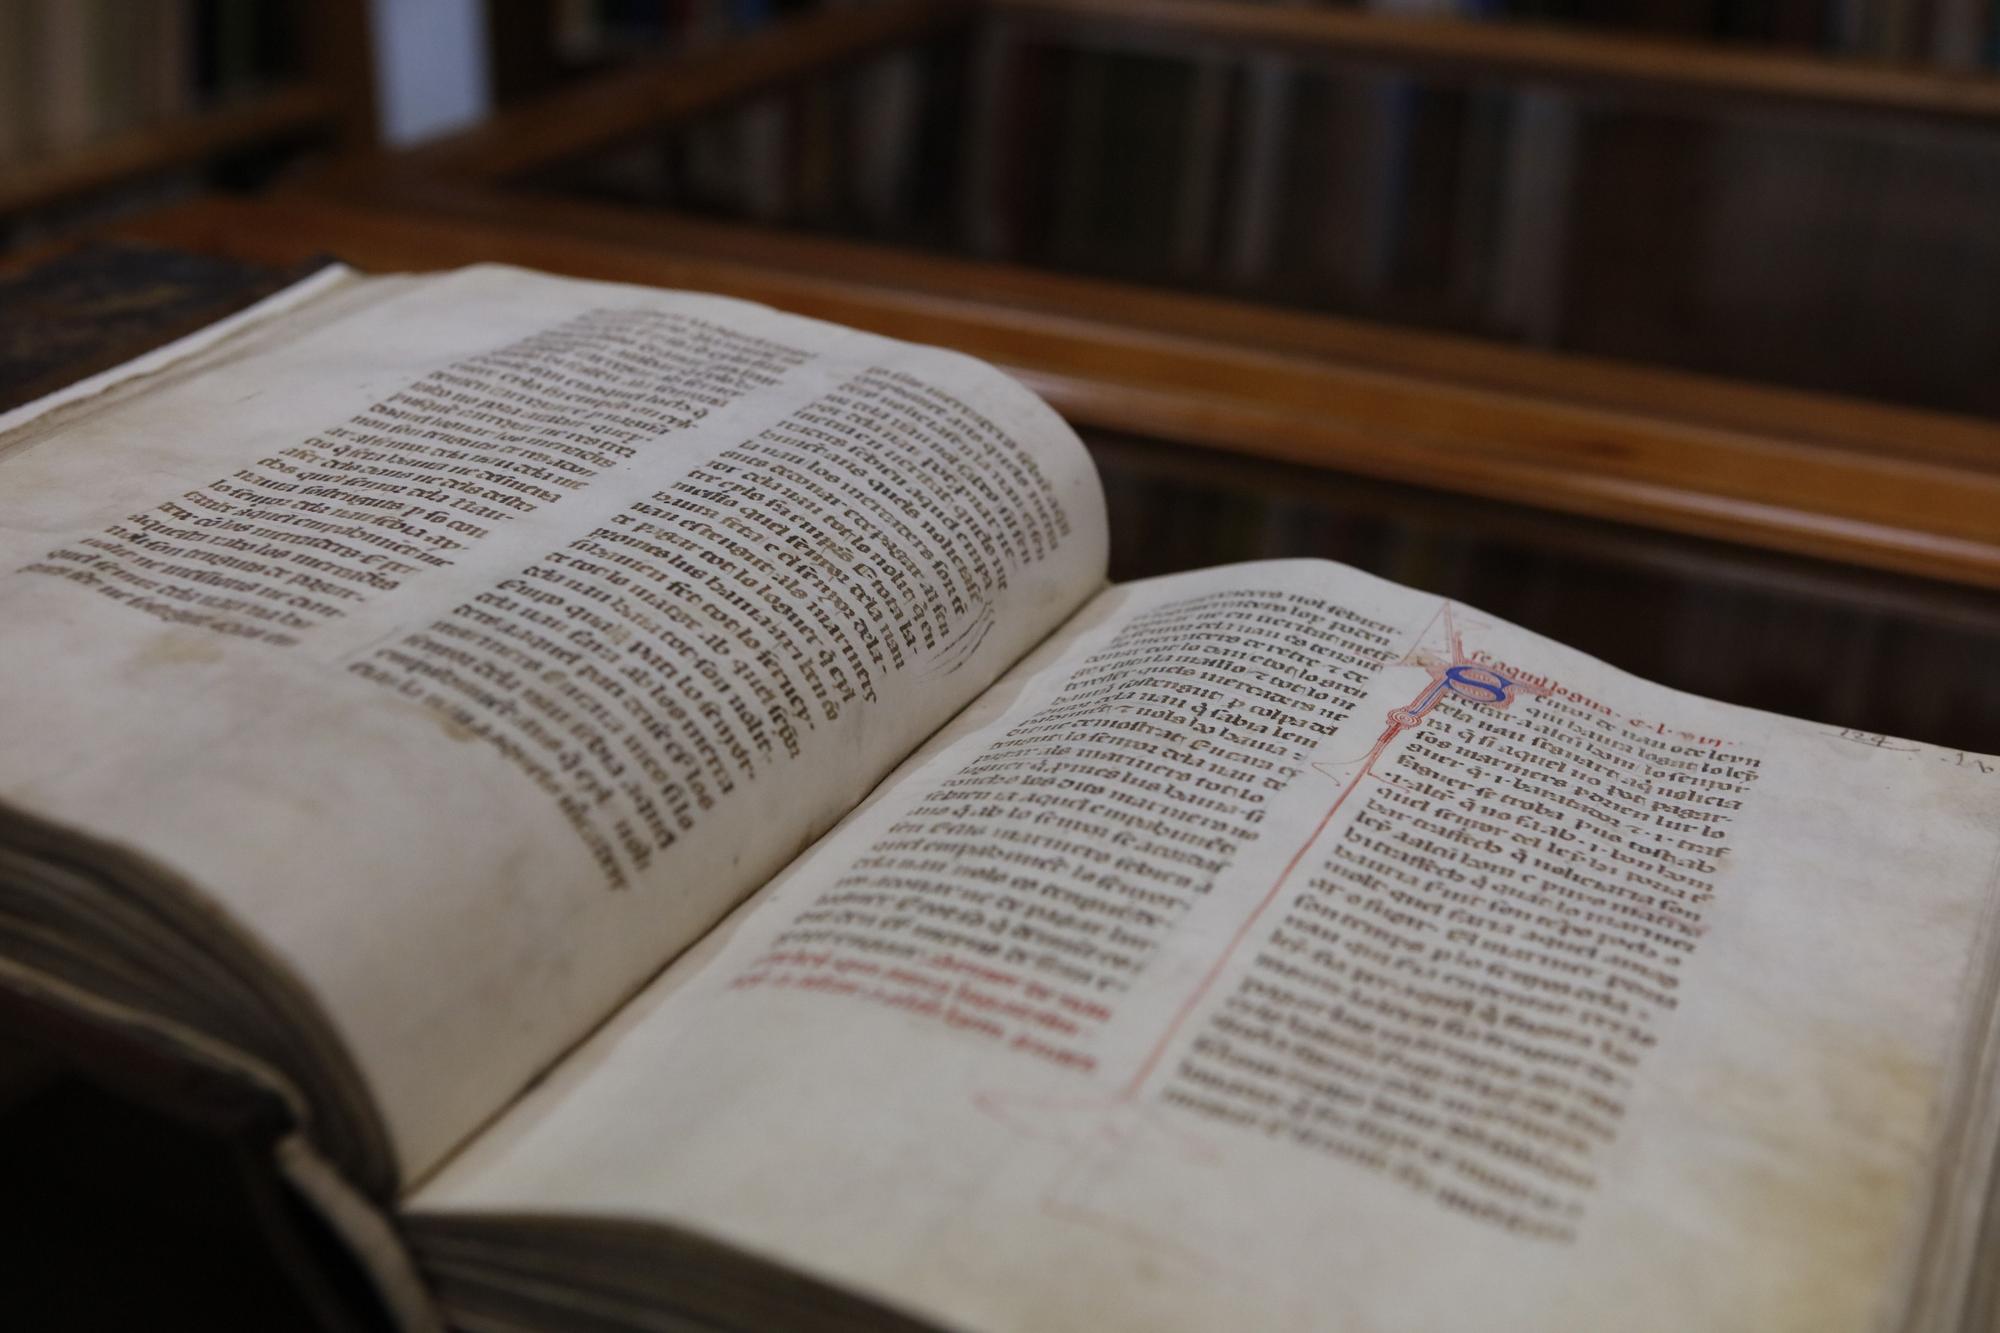 Das älteste und wertvollste Buch der Klosterbibliothek ist das „Llibre del Consolat de Mar“, ein Buch aus dem Jahr 1385, das das damalige Meeresrecht behandelt.